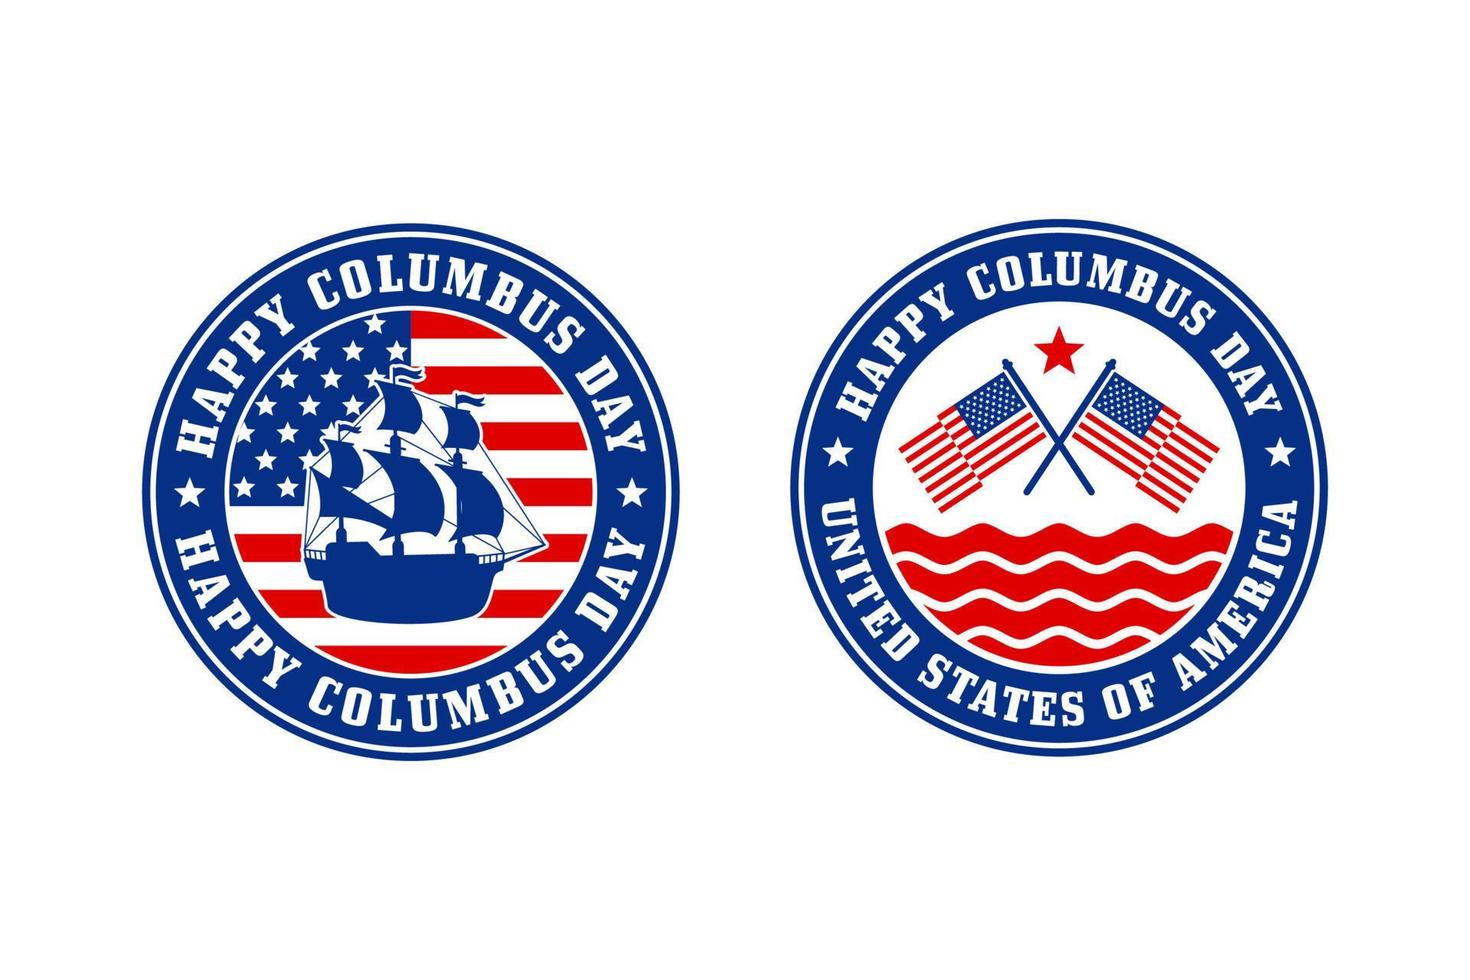 Columbus day badge design logo collection vector